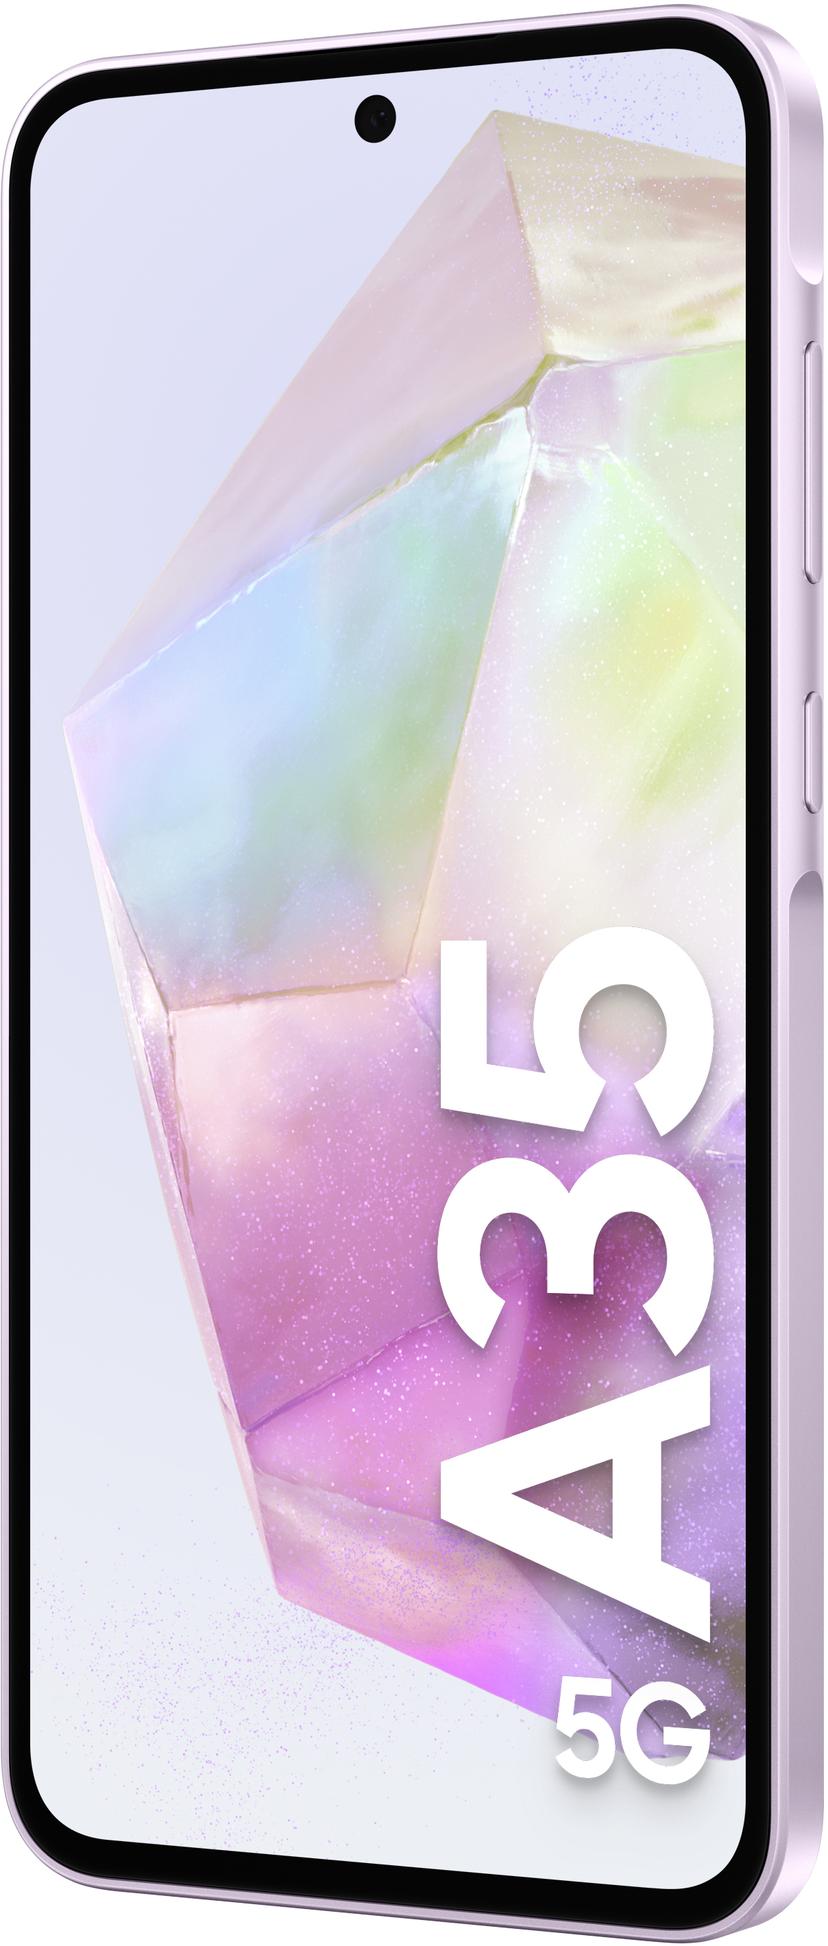 Samsung Galaxy A35 5G 256GB Lila